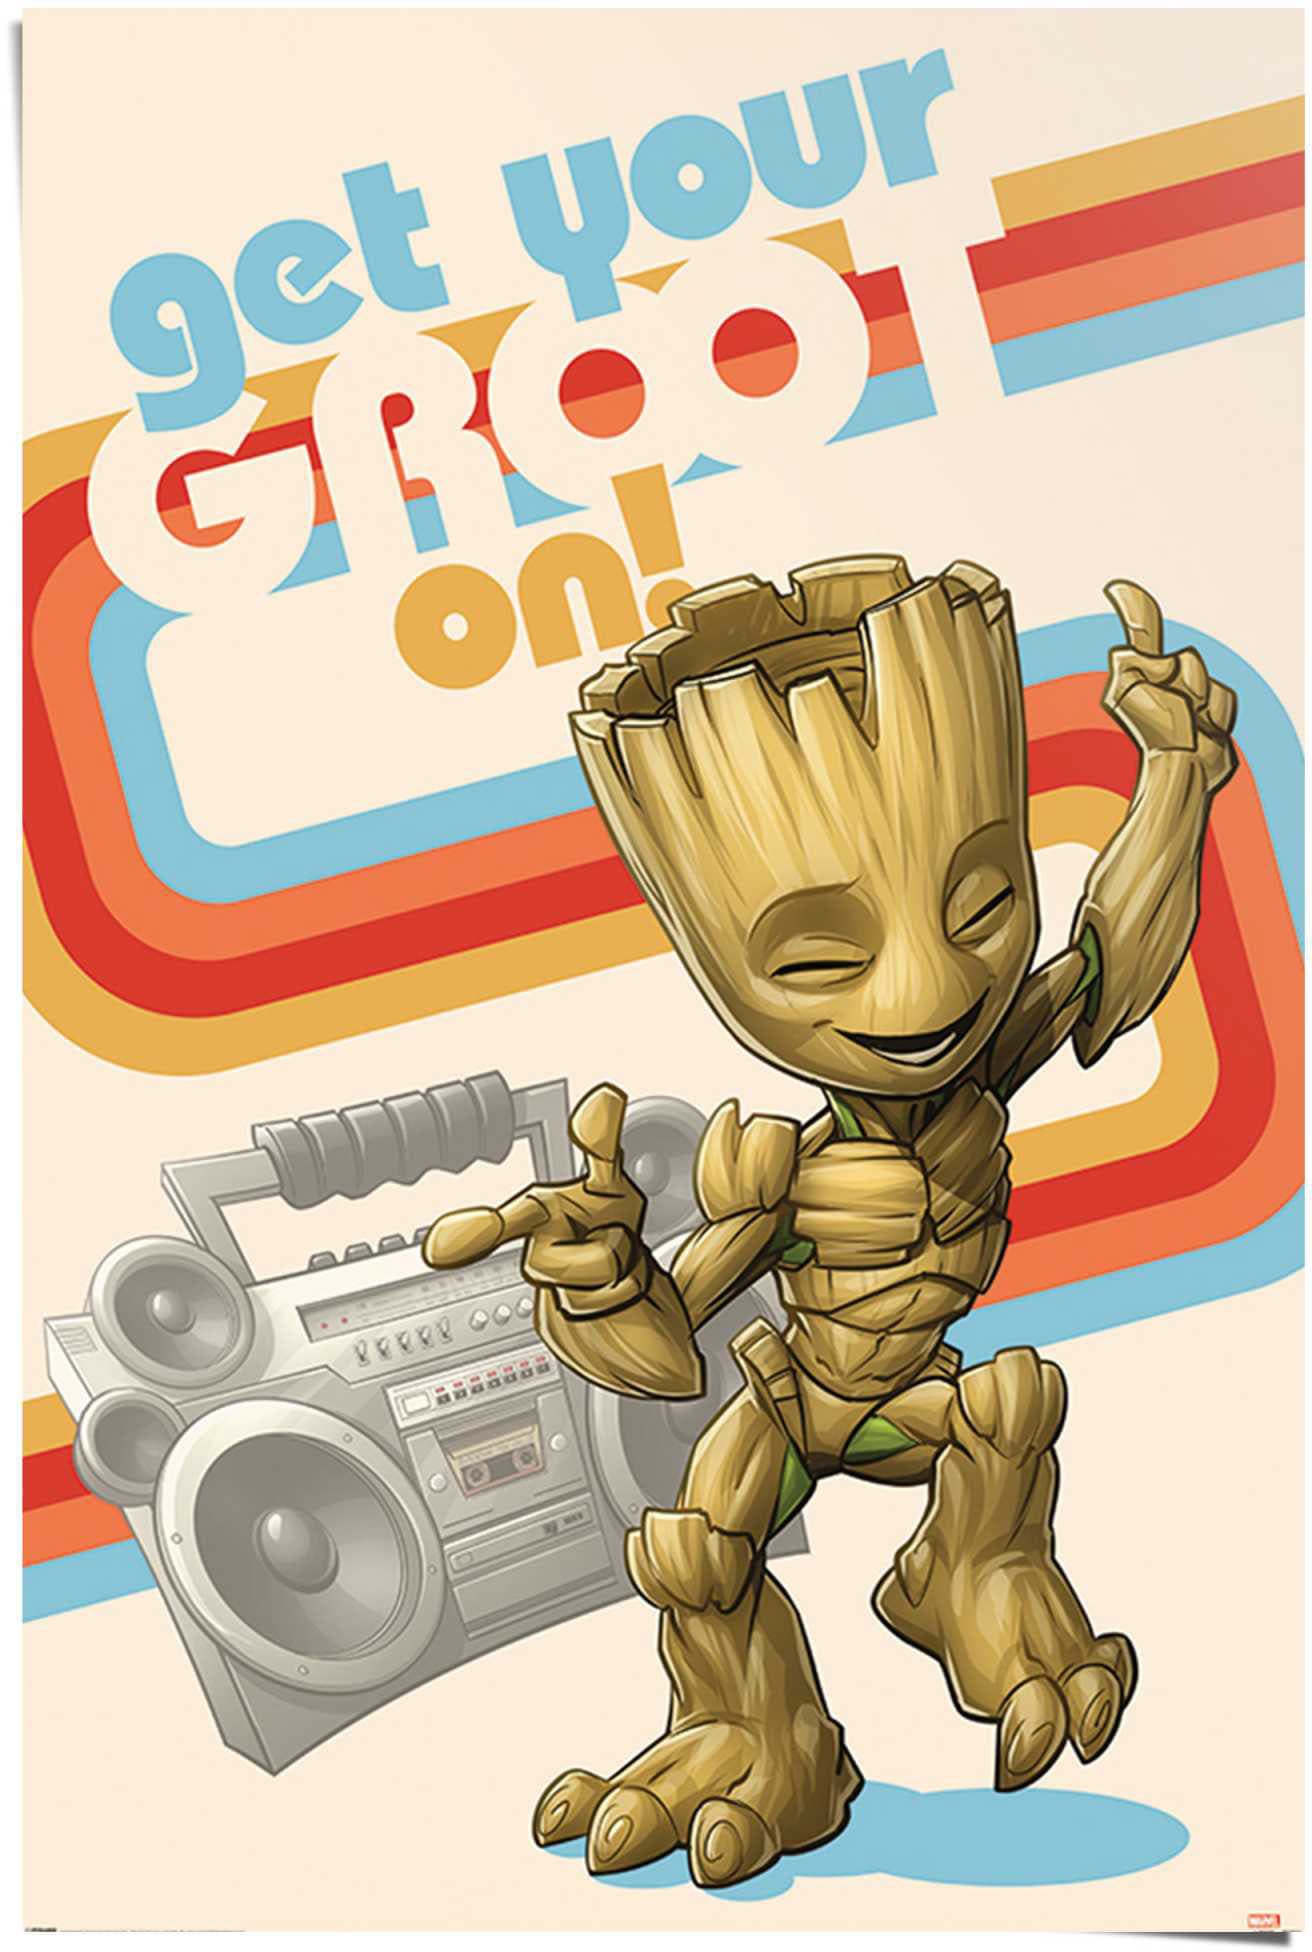 »Get Groot (1 Groot Poster of Reinders! bequem Ich - on Baby the bin Galaxy Groot«, St.) bestellen - your Guardians